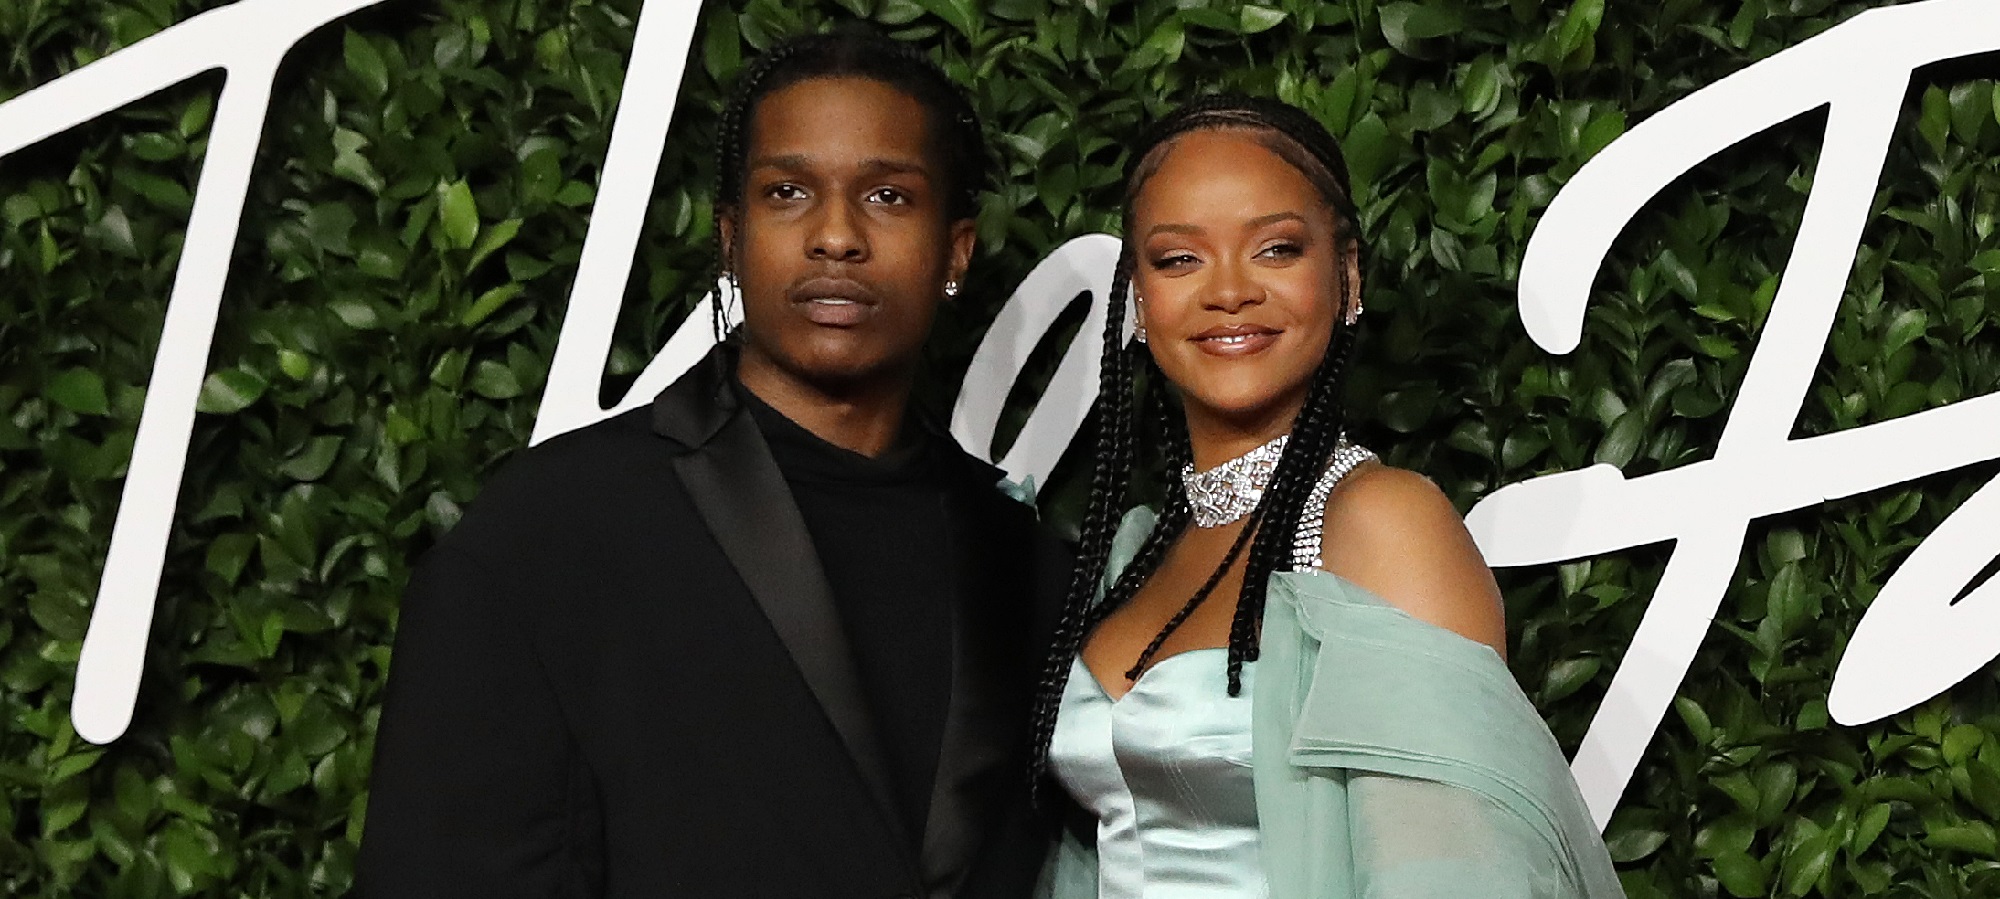 Aseguran que Rihanna y el rapero A$AP Rocky son pareja